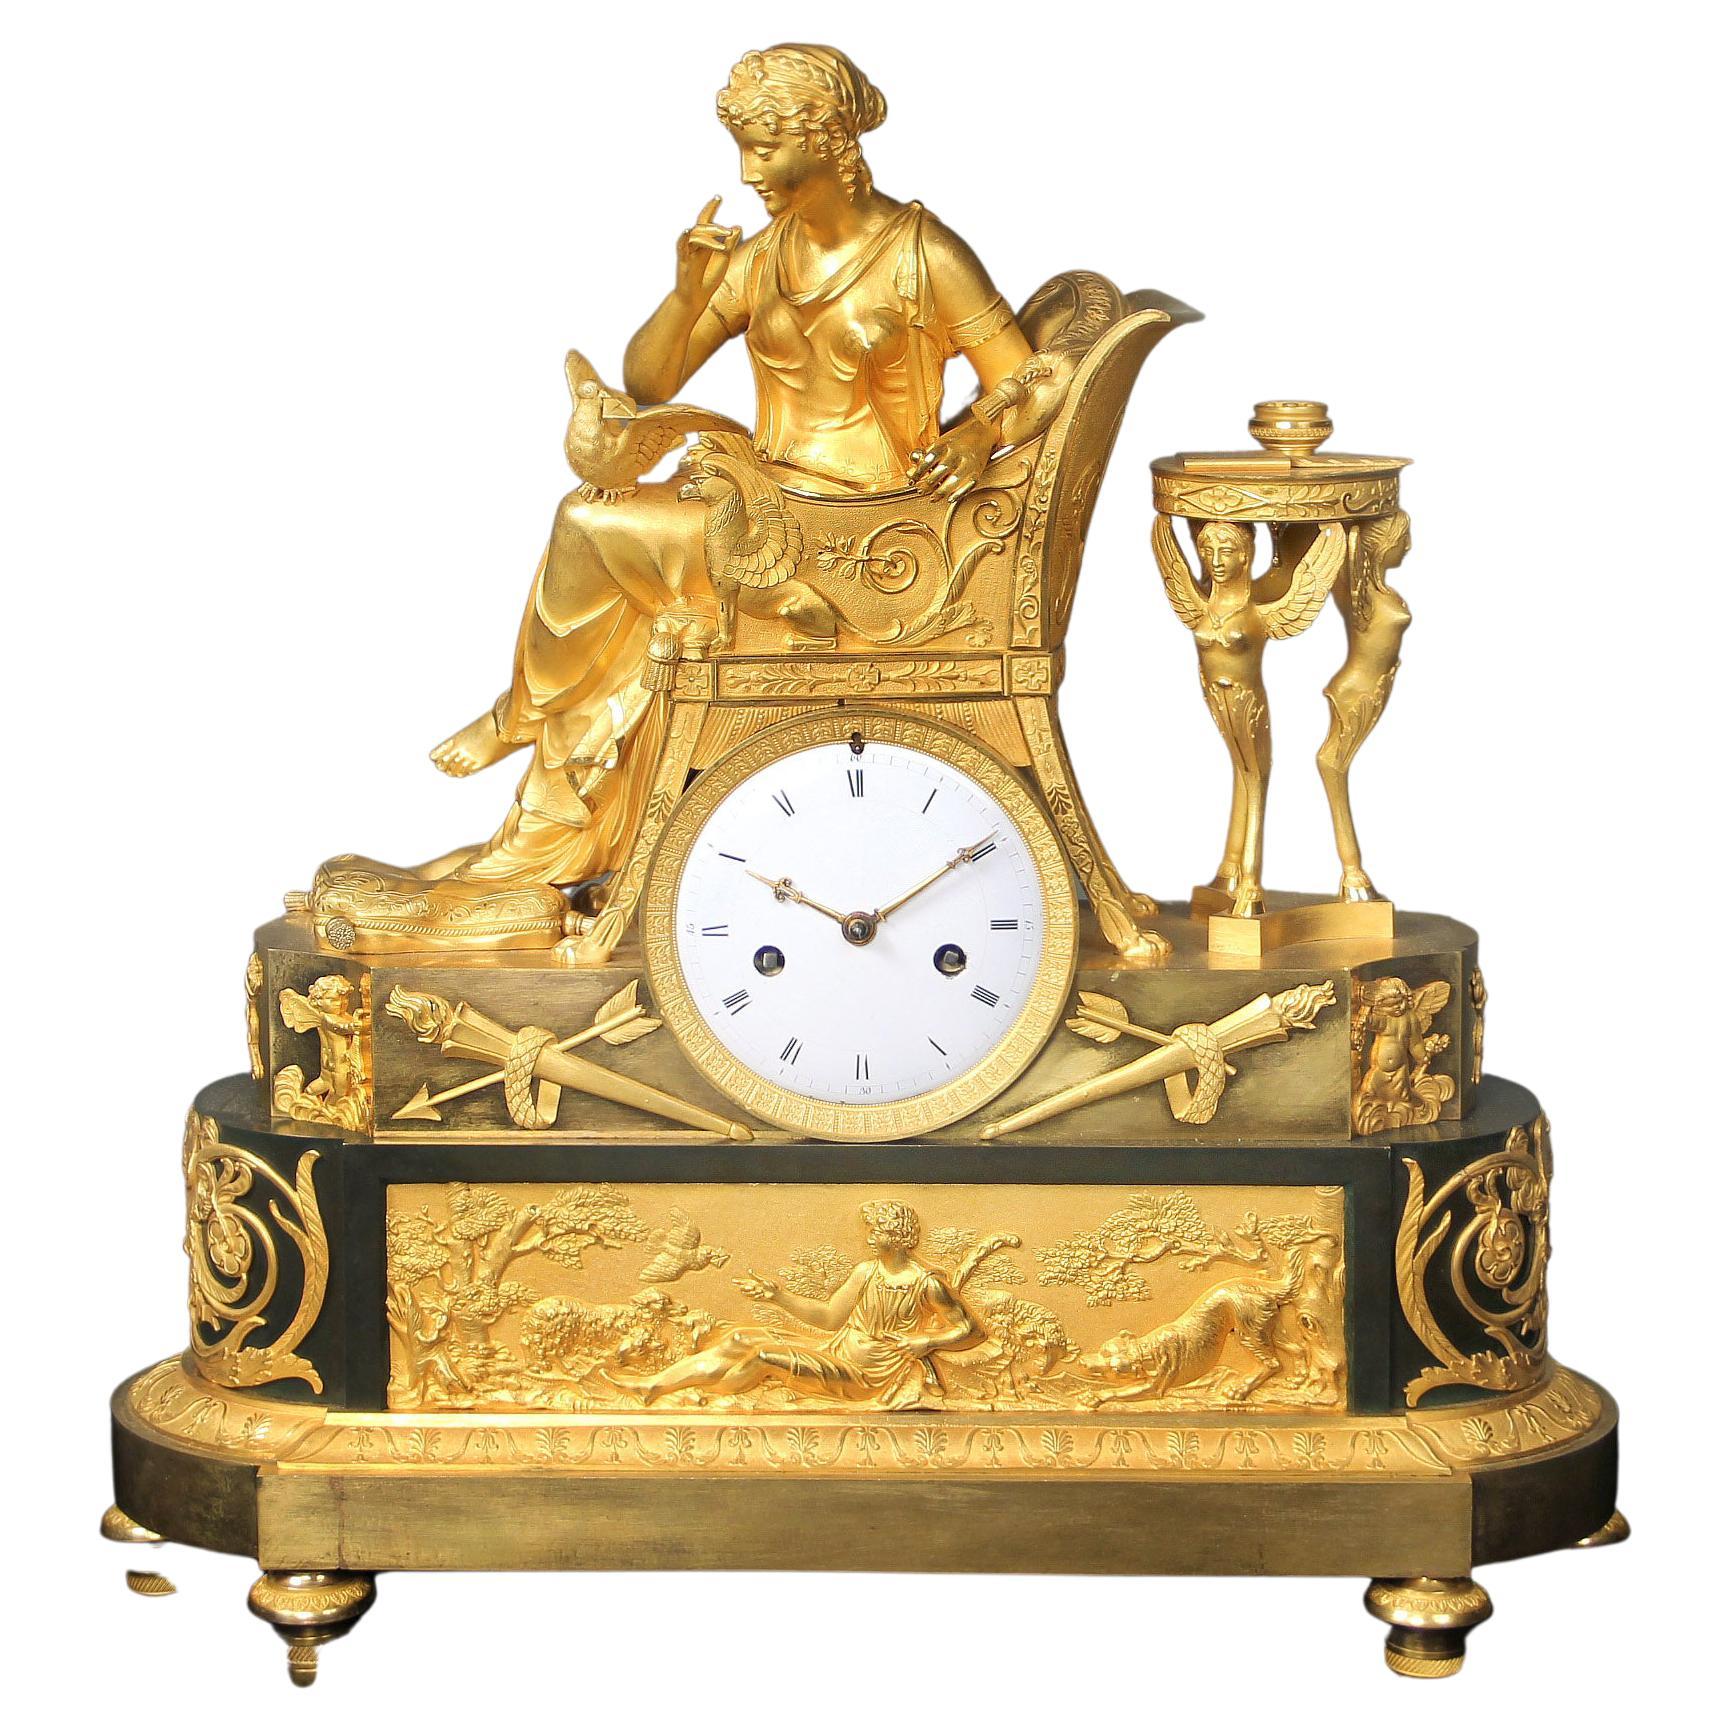 Fantastique horloge de cheminée de style Empire du début du XIXe siècle en bronze doré et patiné